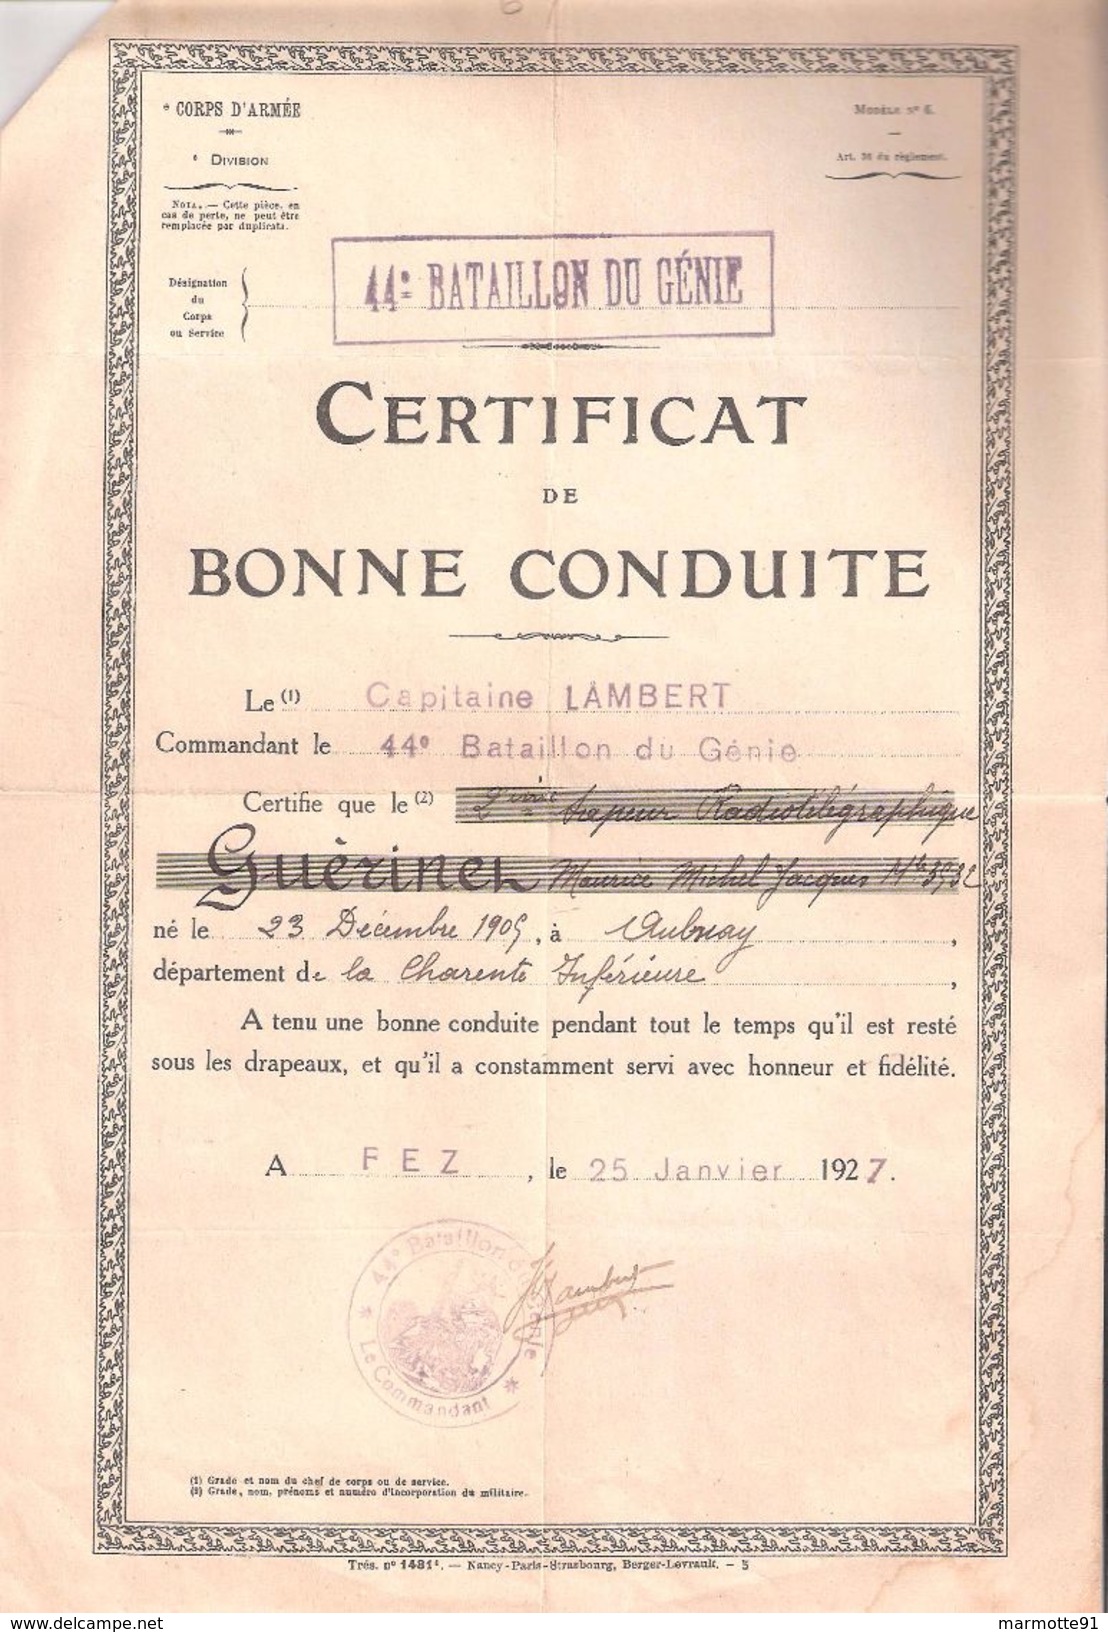 LOT DOCUMENTS SAPEUR TELEGRAPHISTE Cie RADIO 23/82 CITATION JUIN 1940 VIIe ARMEE BONNE CONDUITE 44 BATAILLON GENIE  FEZ - Documents